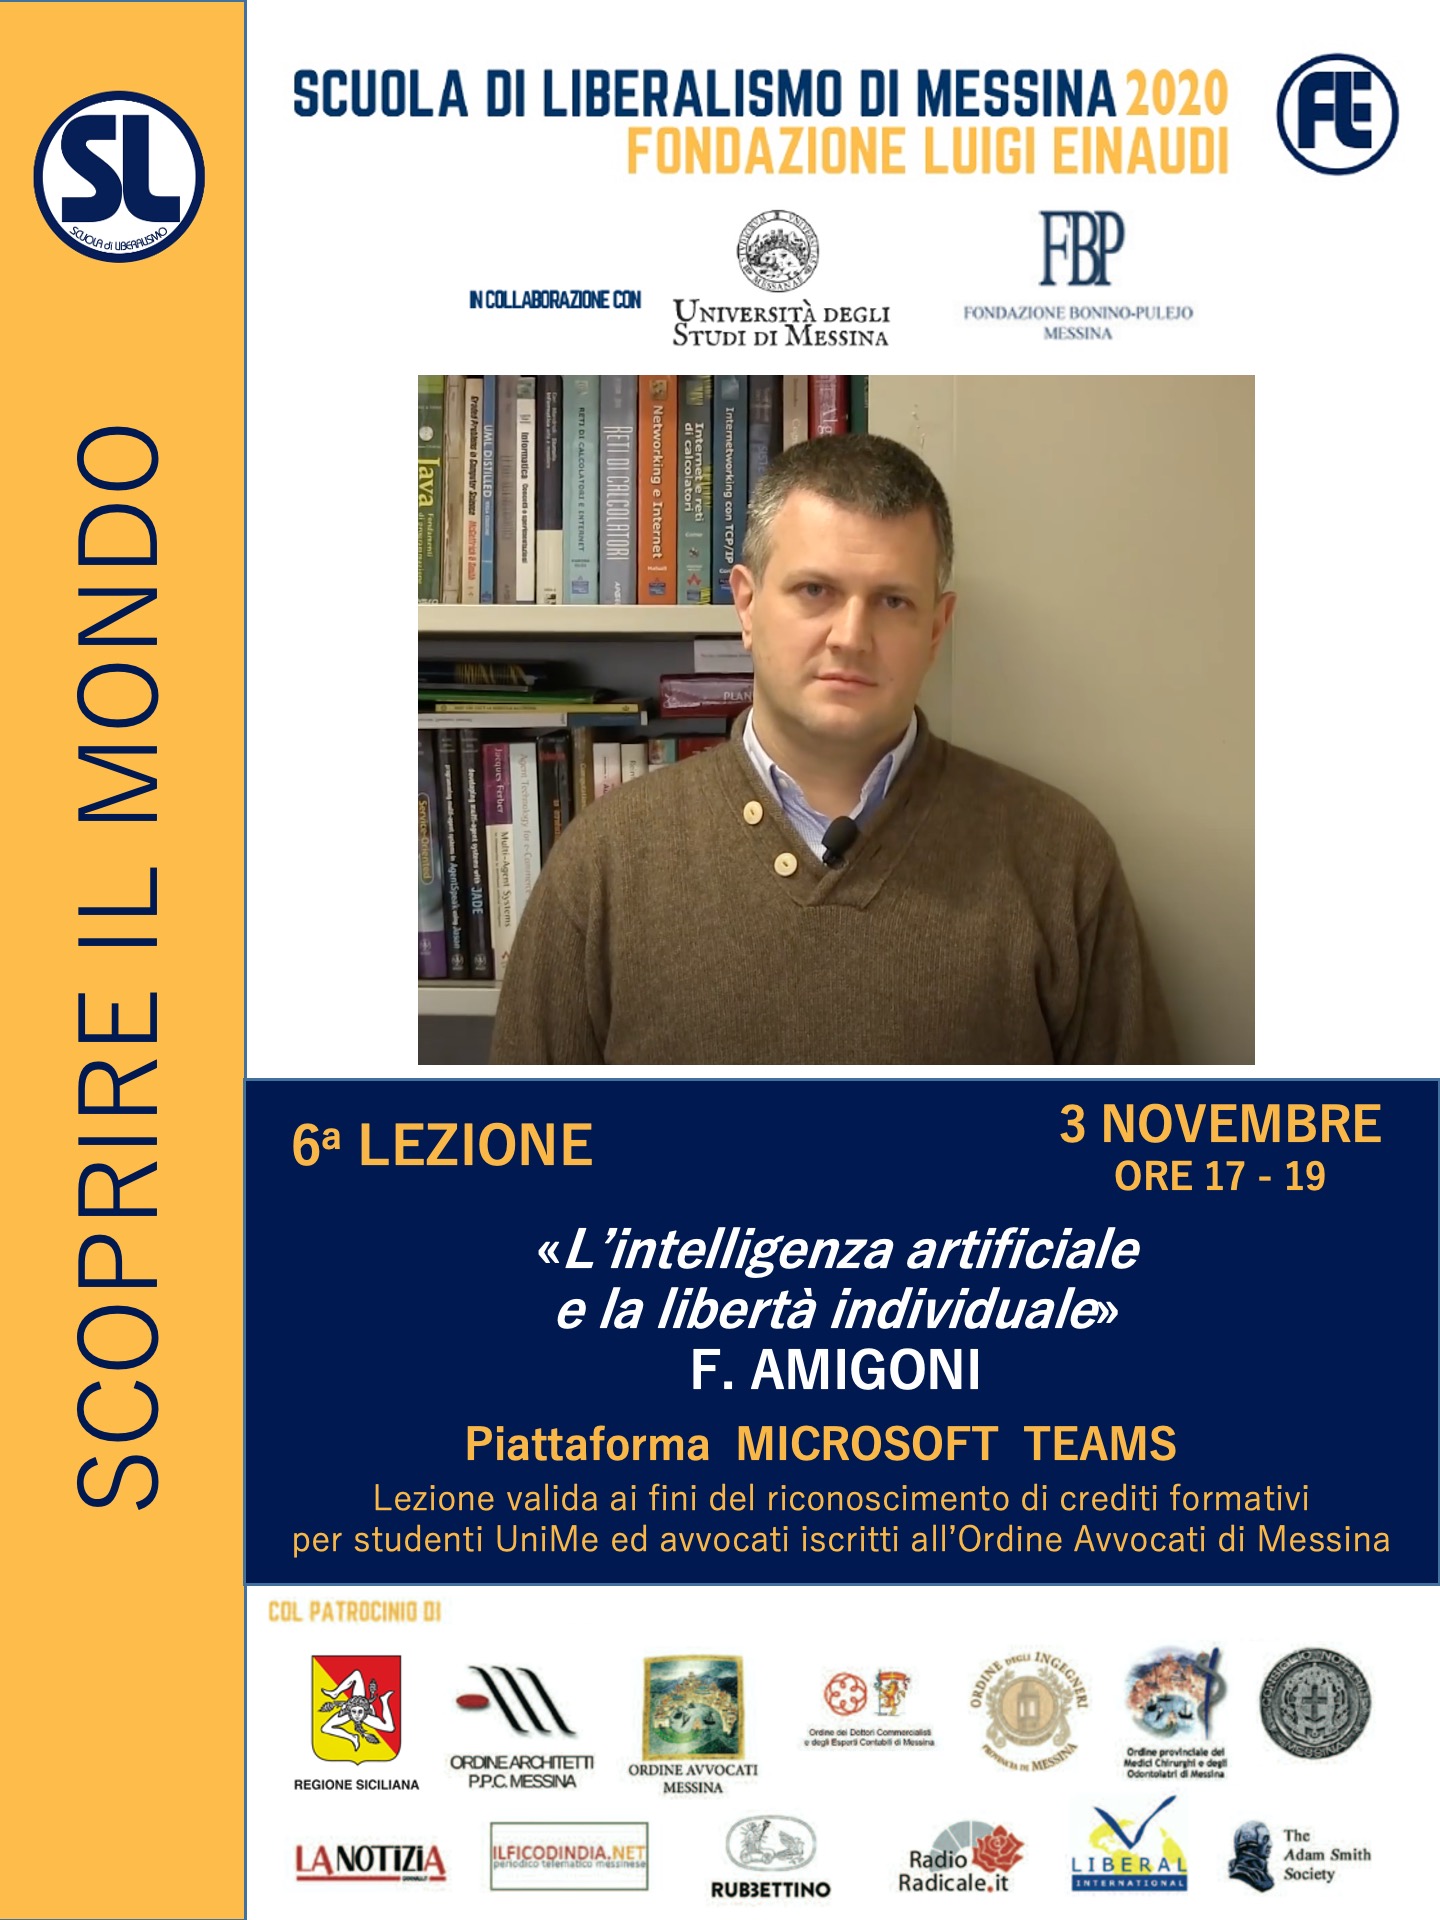 Scuola di Liberalismo 2020 Messina: 3 novembre lezione di Francesco Amigoni